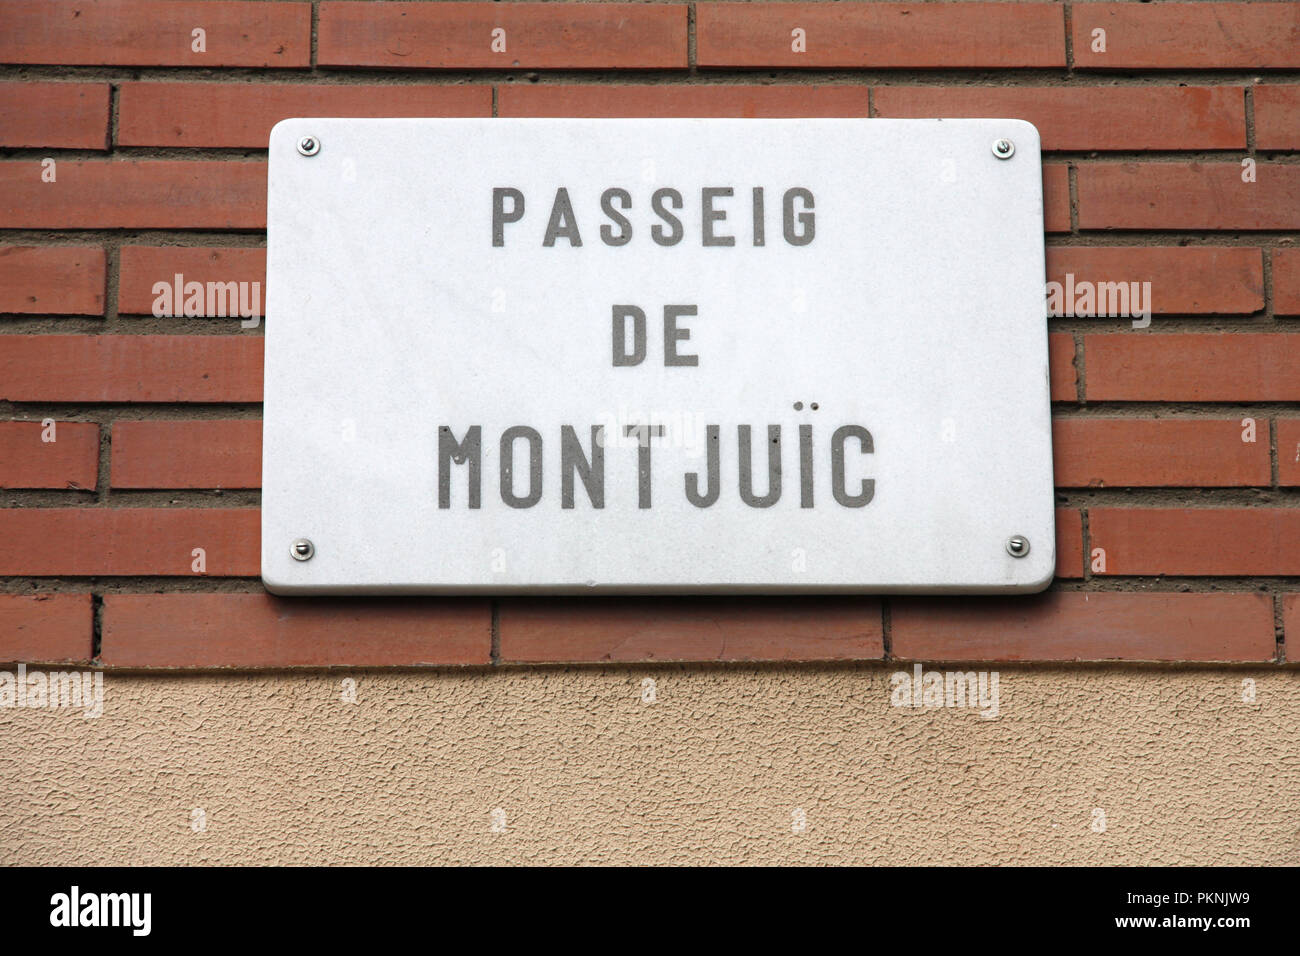 Passeig de Montjuic - street sign in Barcelona, Spain Stock Photo